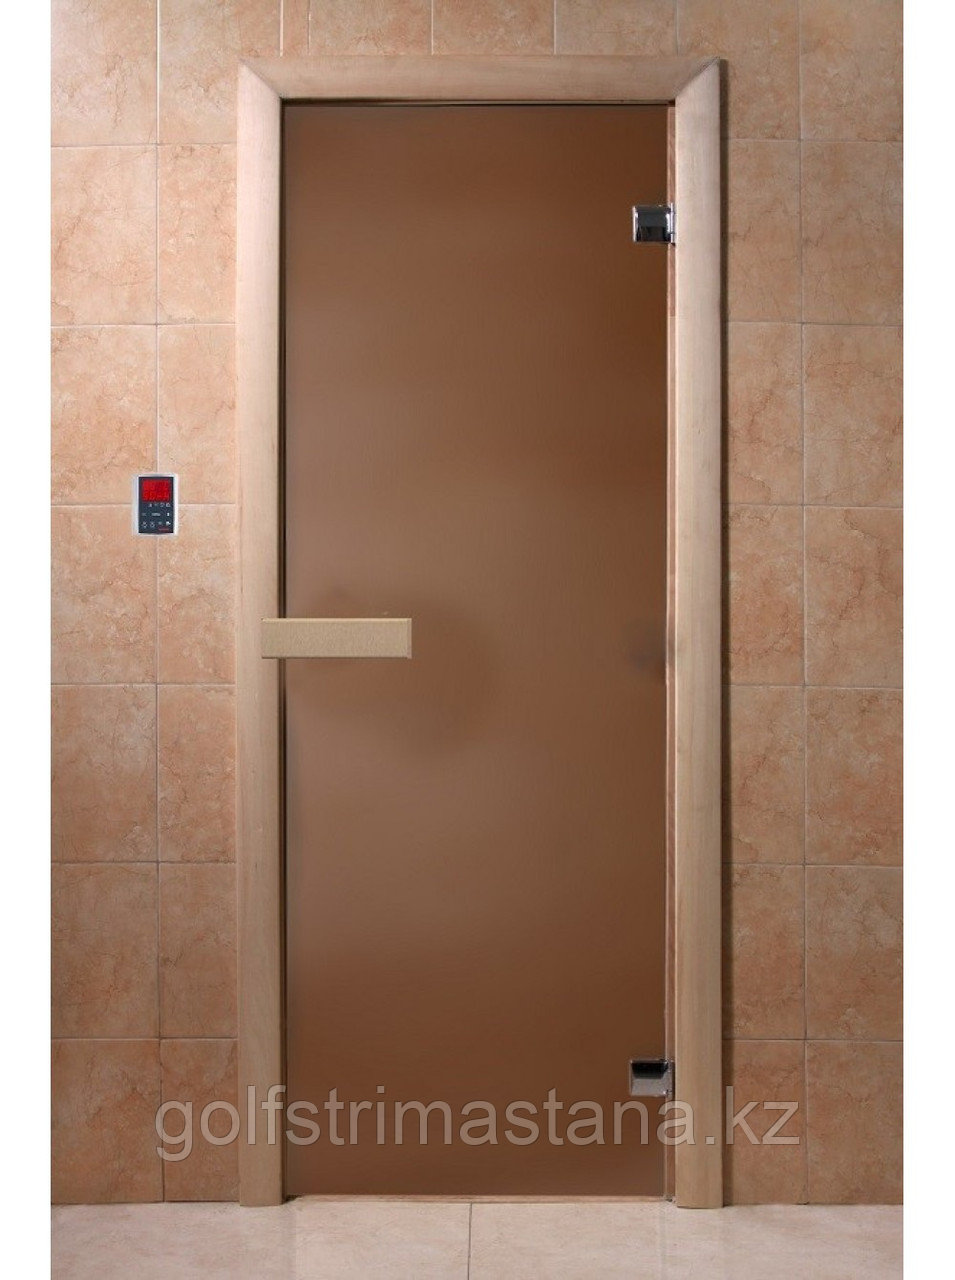 Дверь для бани "Бронза матовая" 1900*700, 6мм, 2 петли